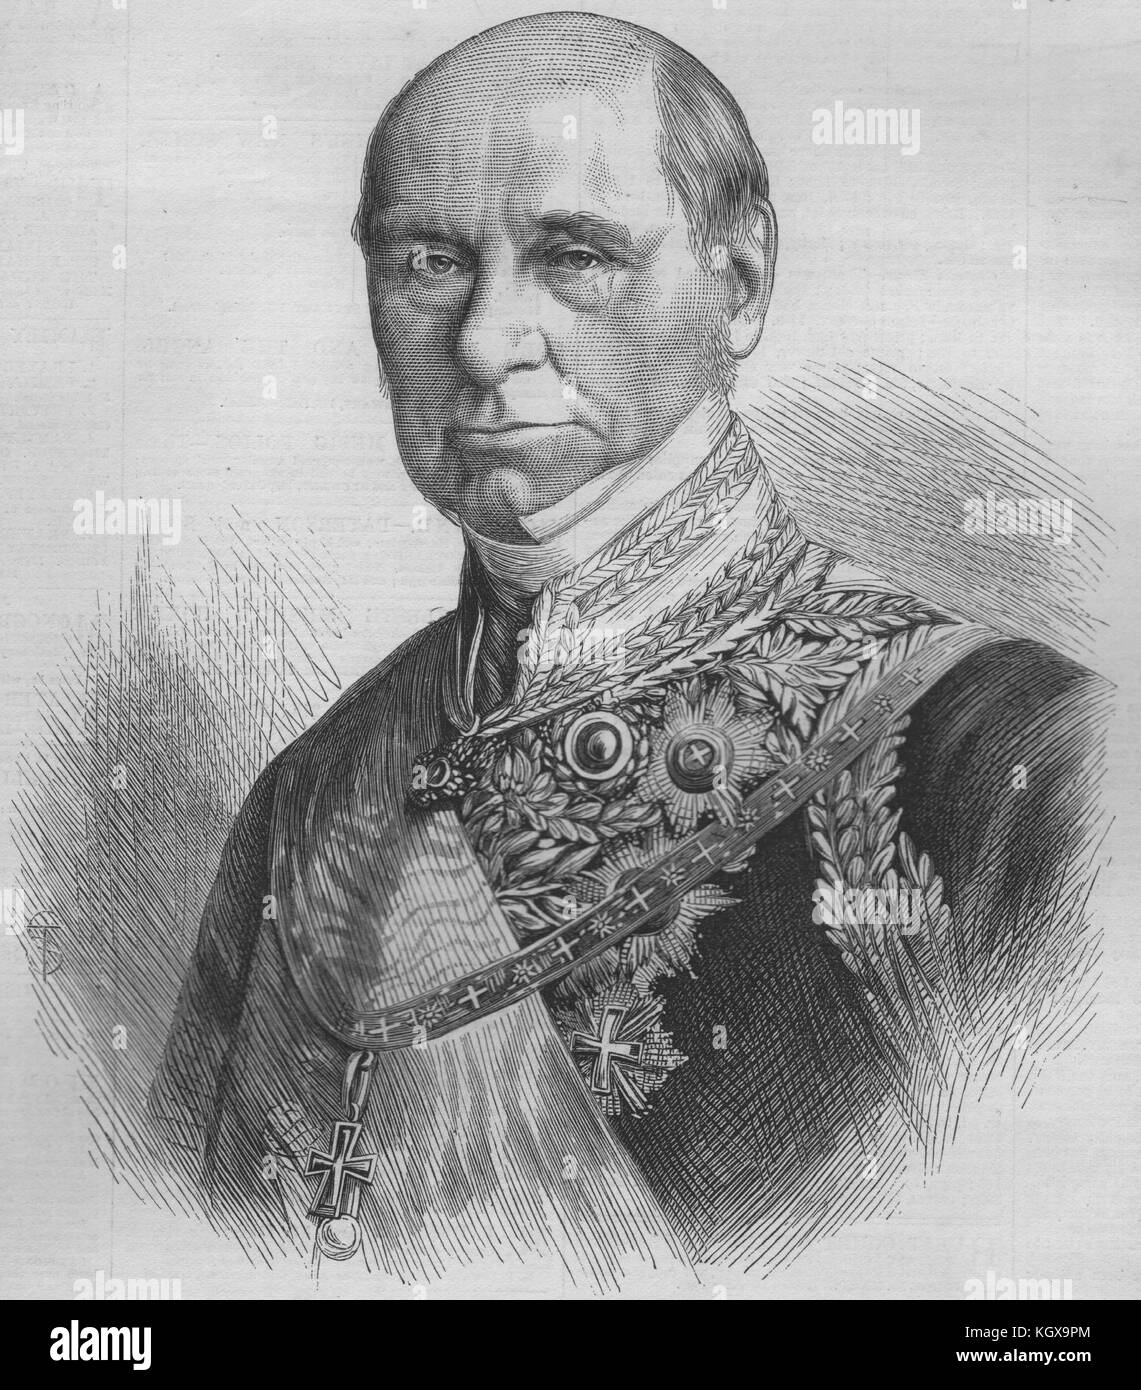 Baron Brunnow, difunto Embajador ruso en Gran Bretaña 1870. El Illustrated London News Foto de stock